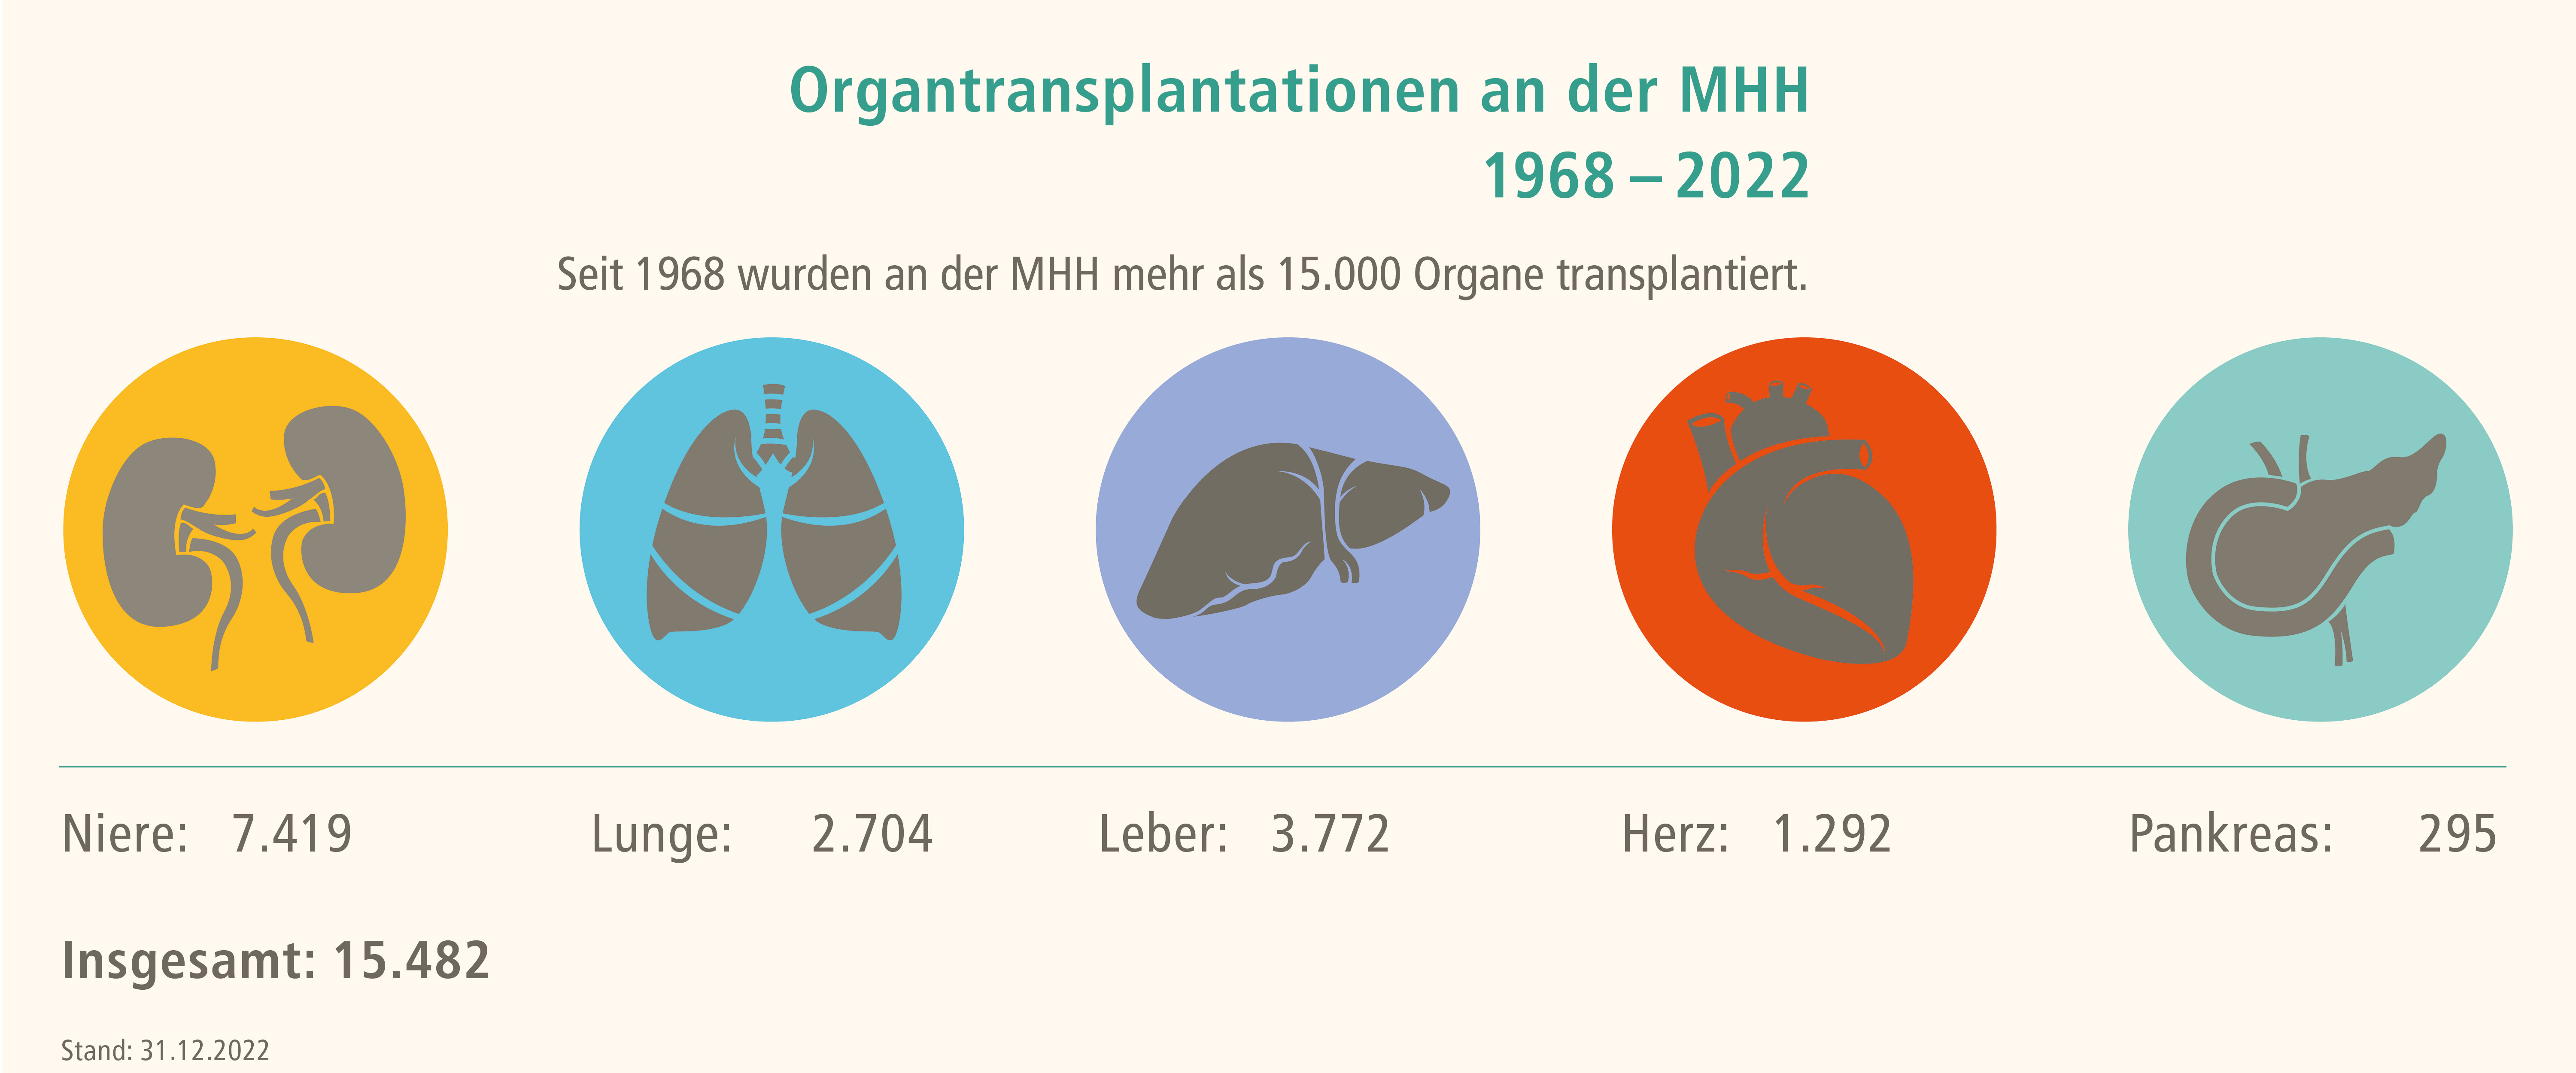 Seit 1968 wurden an der MHH mehr als 15.000 Organe transplantiert. 7.419 Nieren, 2.704 Lungen, 3.772 Lebern, 1.292 Herzen und 295 Bauspeicheldrüsen. Ende 2022 waren es insgesamt 15.482 Organe. Copyright: MHH /Transplantationszentrum  